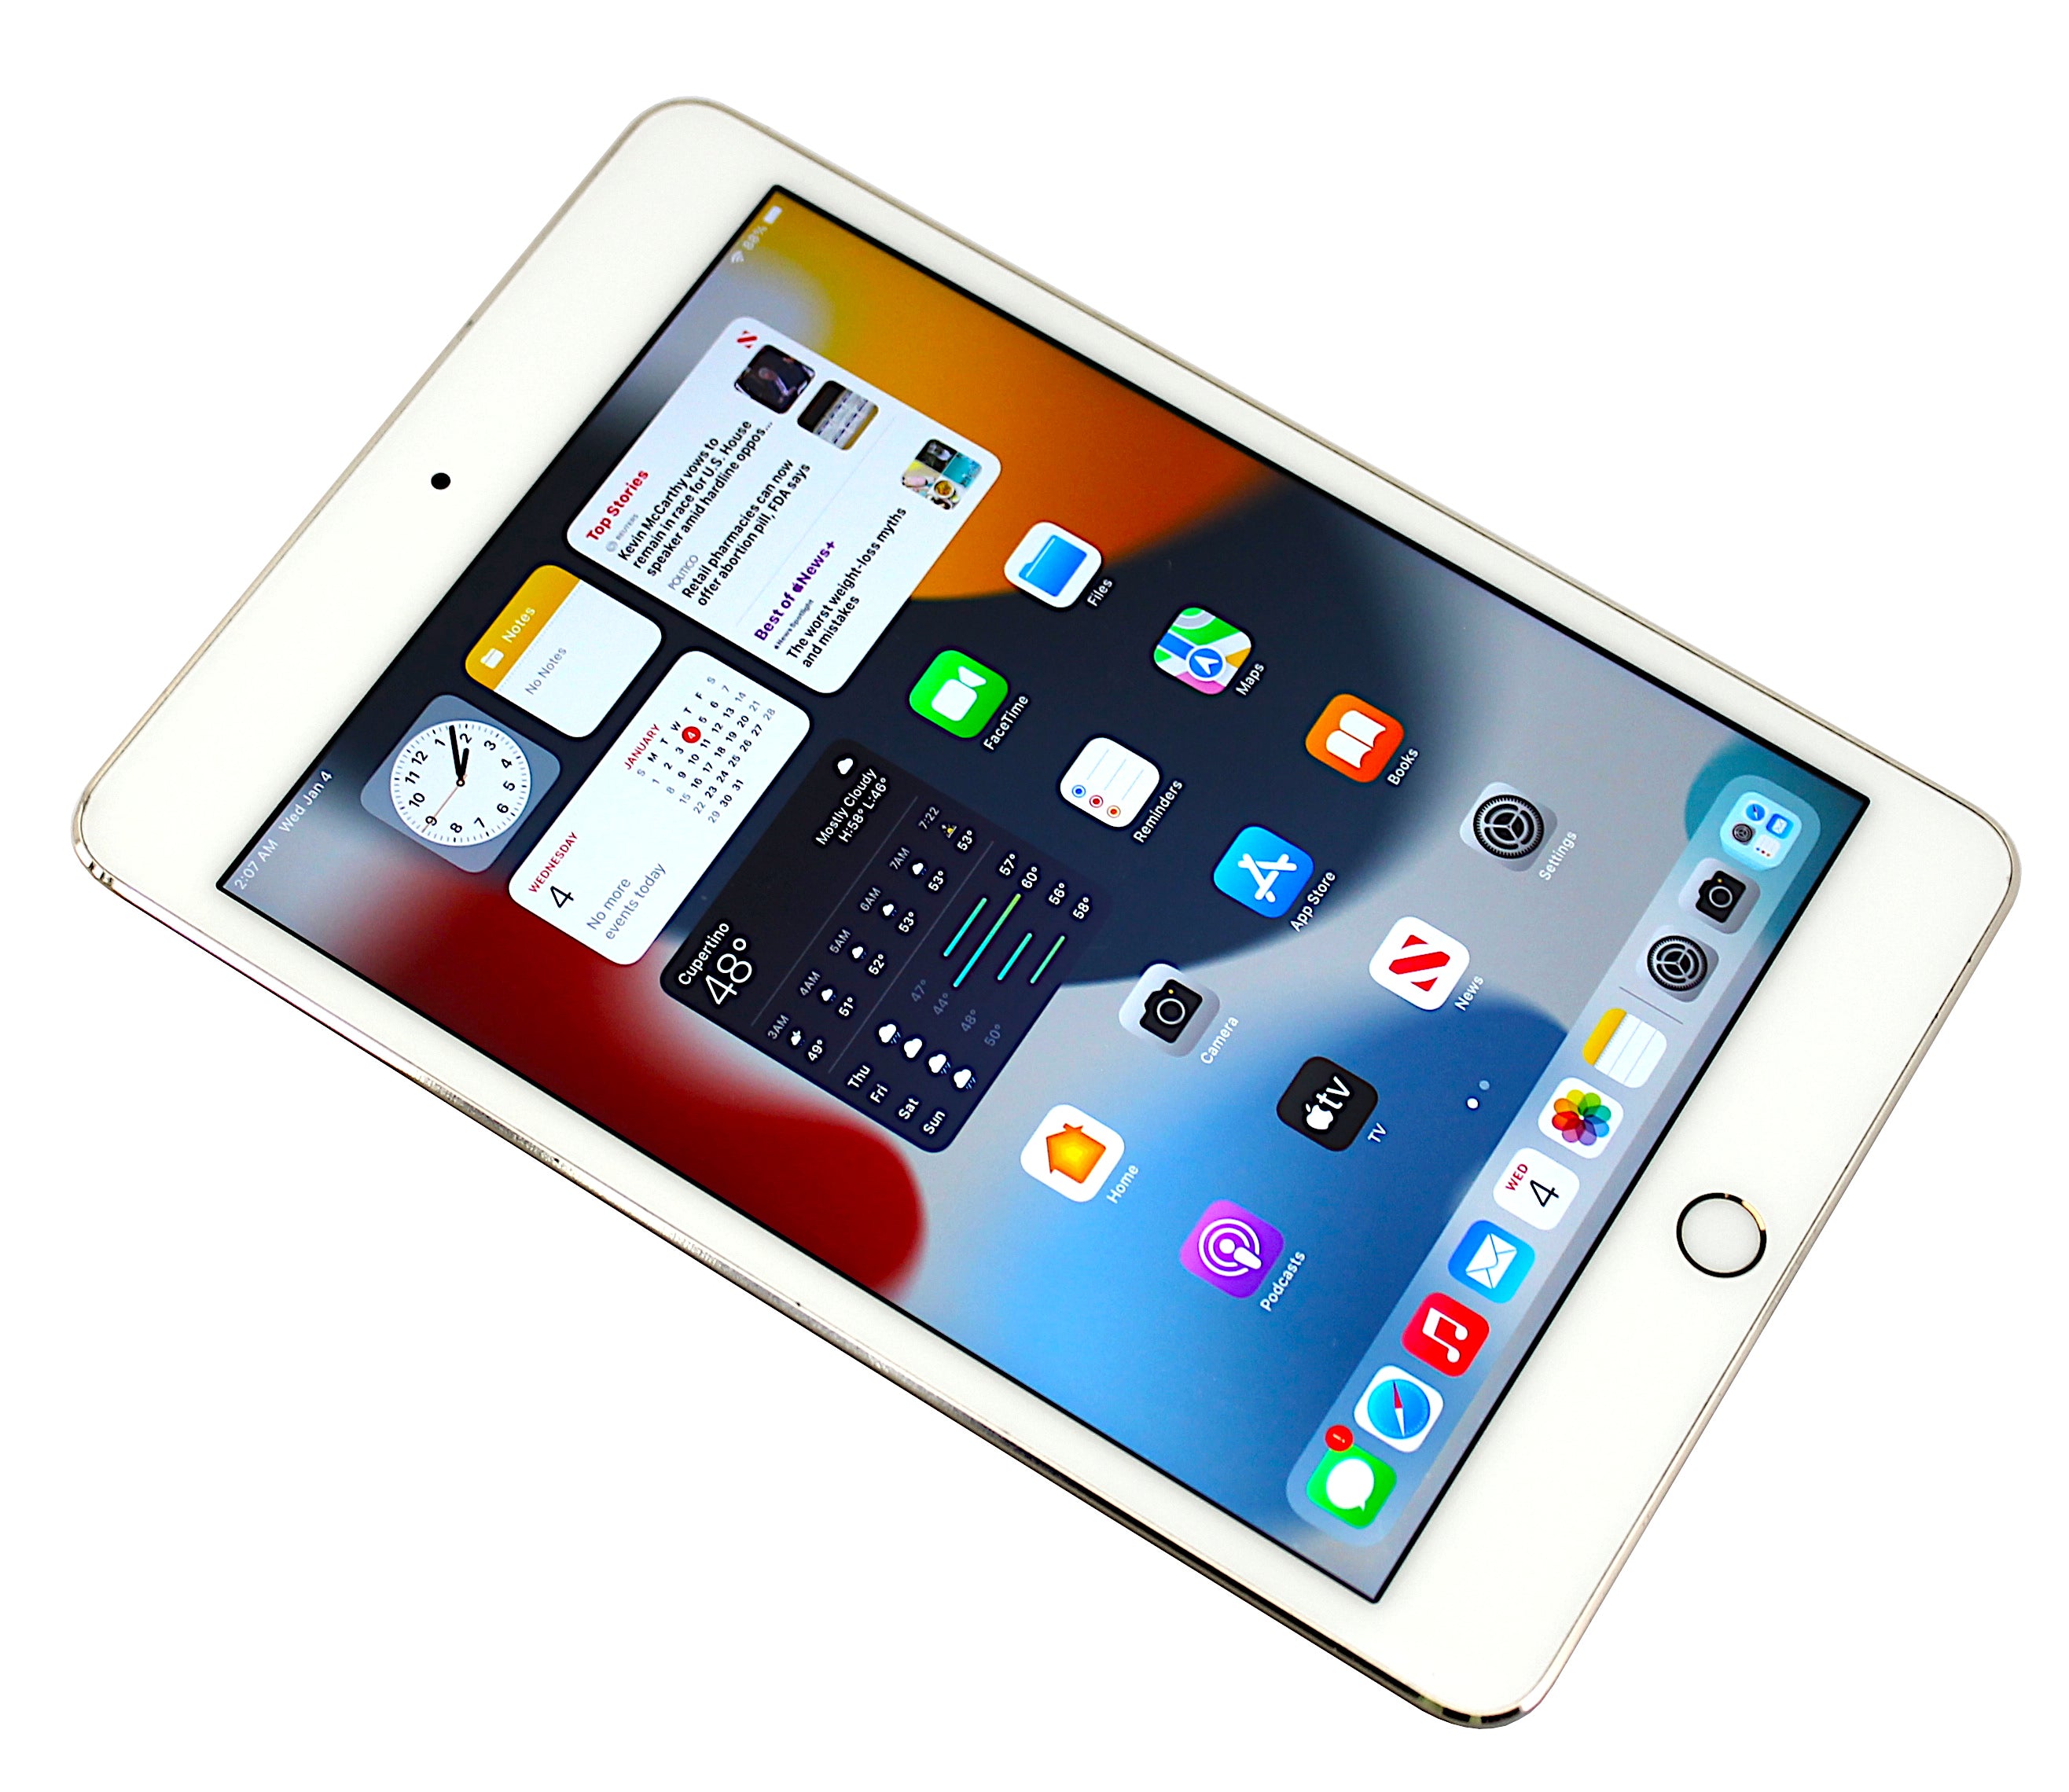 Apple iPad Mini 4th Generation Tablet, 64GB, WiFi + GSM, Gold, A1550